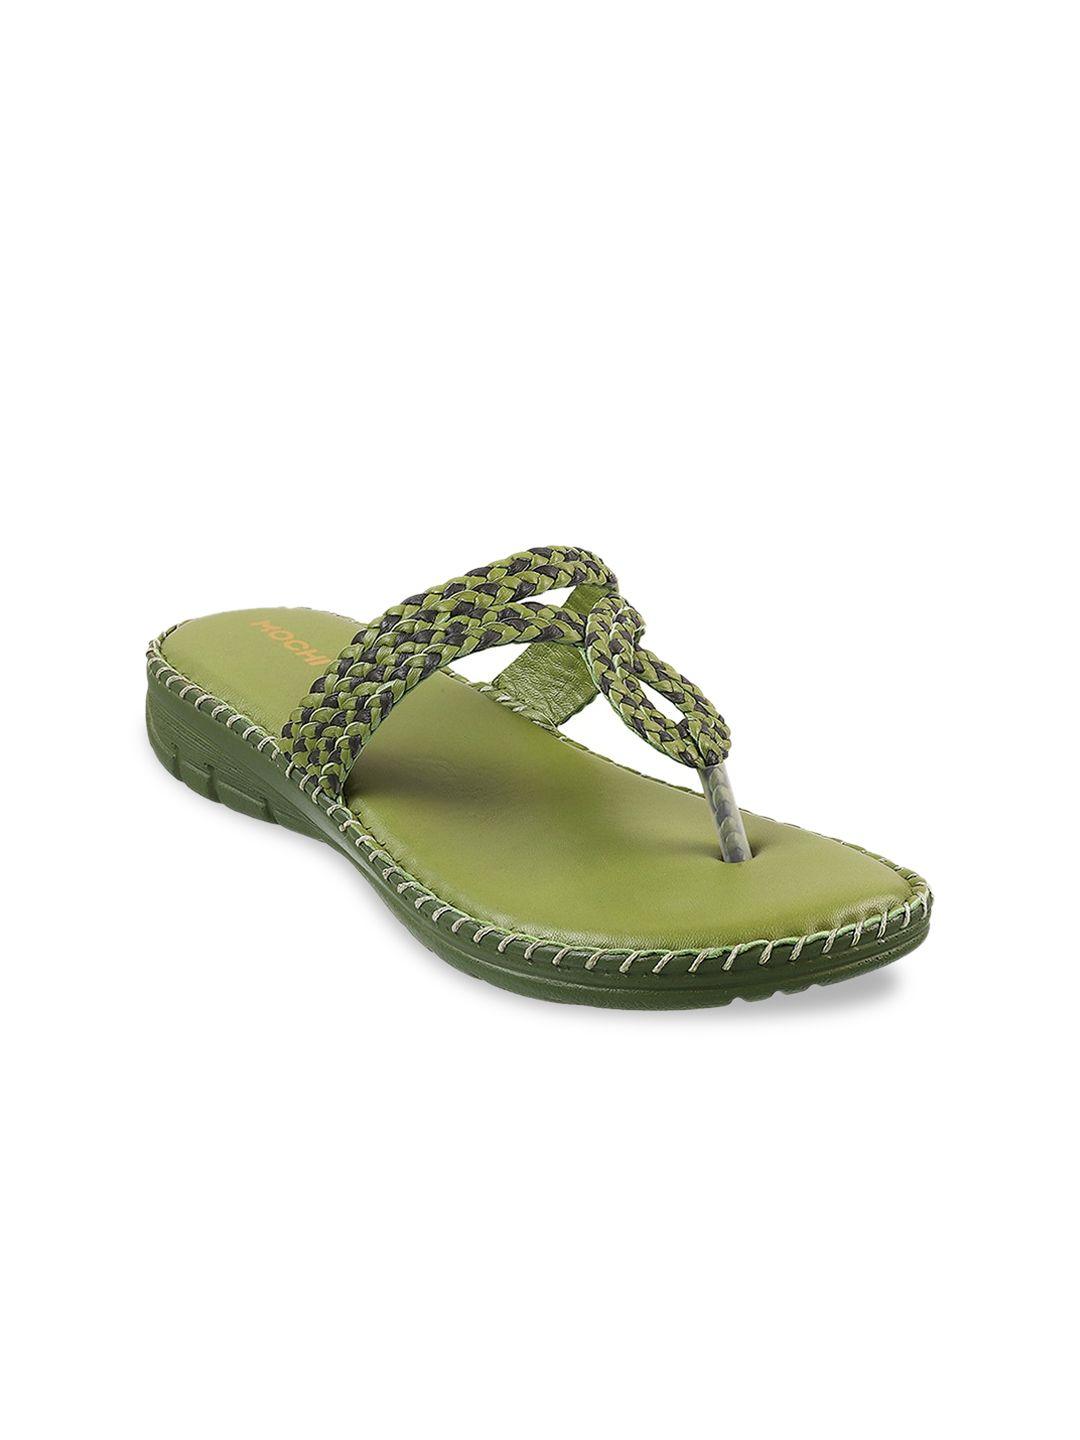 mochi women braided open toe t-strap flats